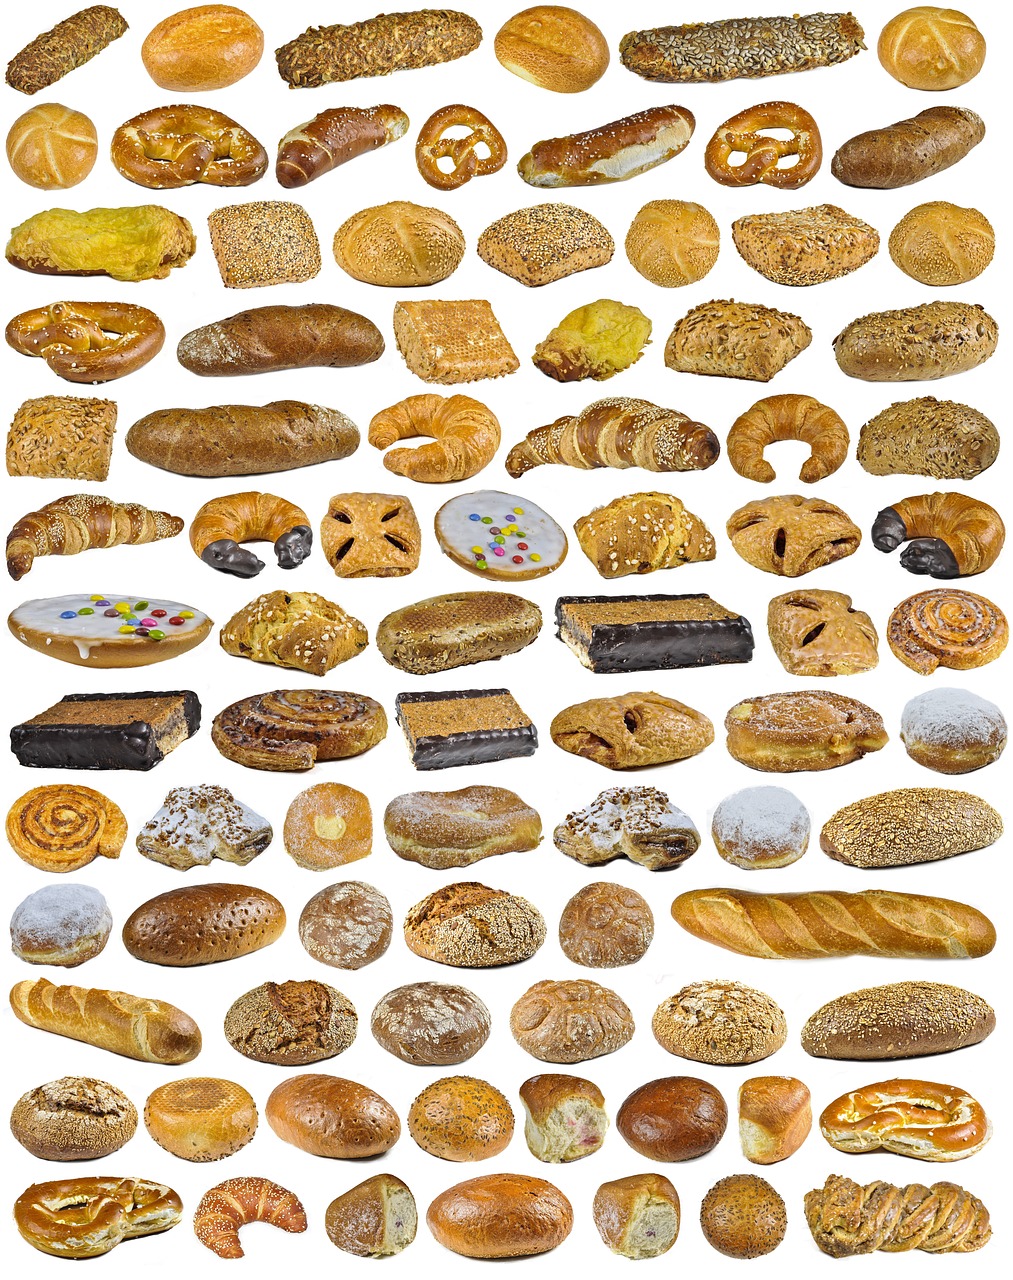 Mellow Date Nut Bread